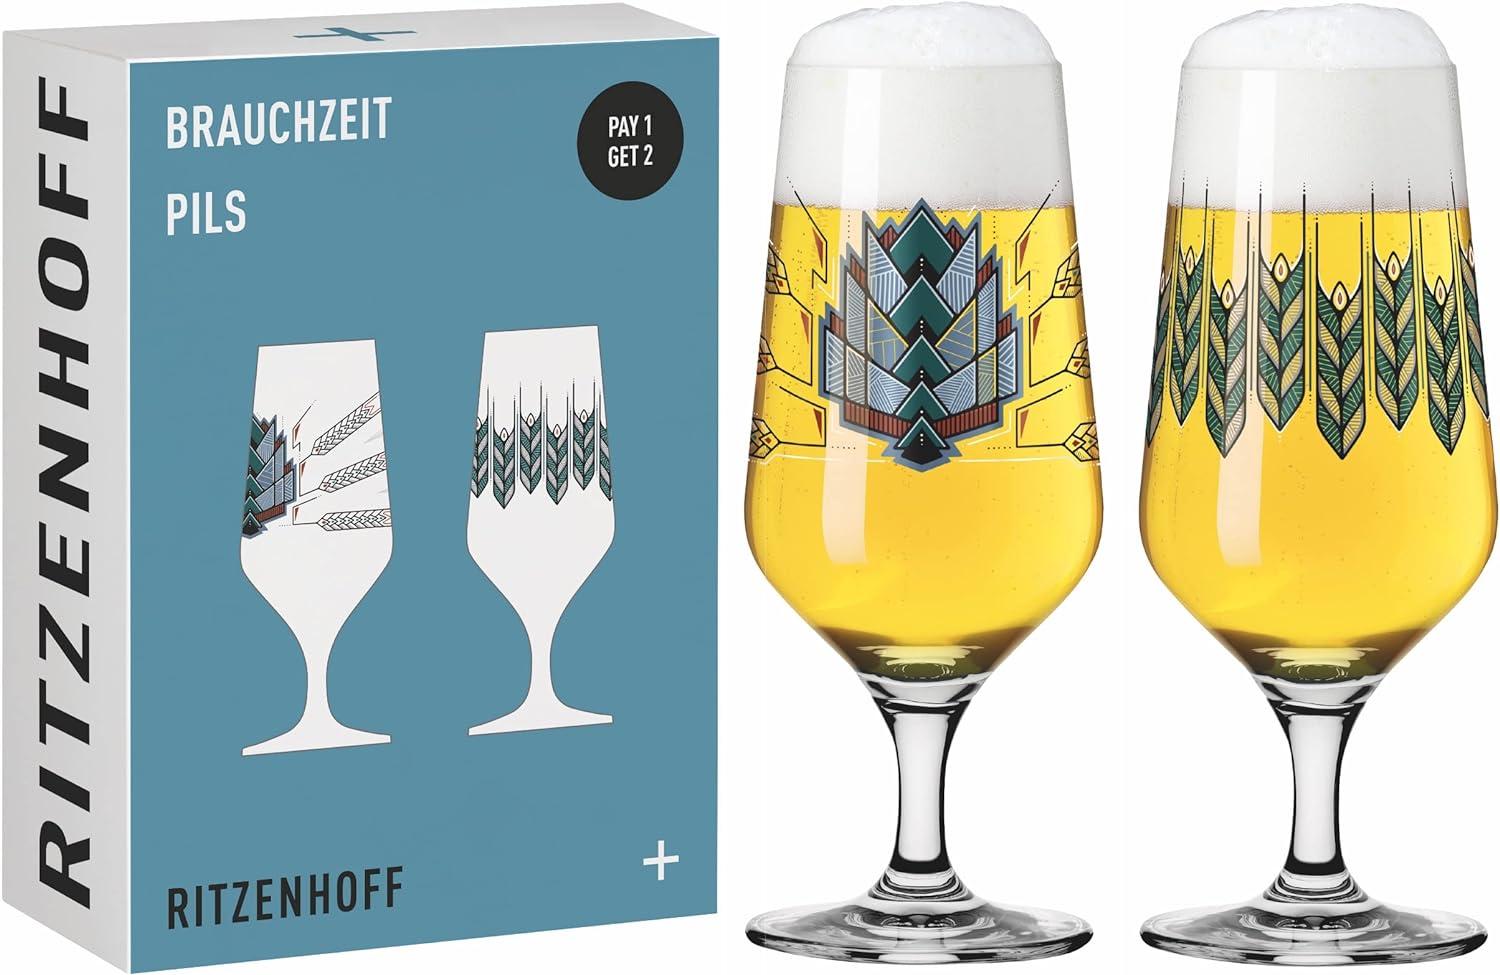 Ritzenhoff Brauchzeit Biergläser 2er Set Bild 1